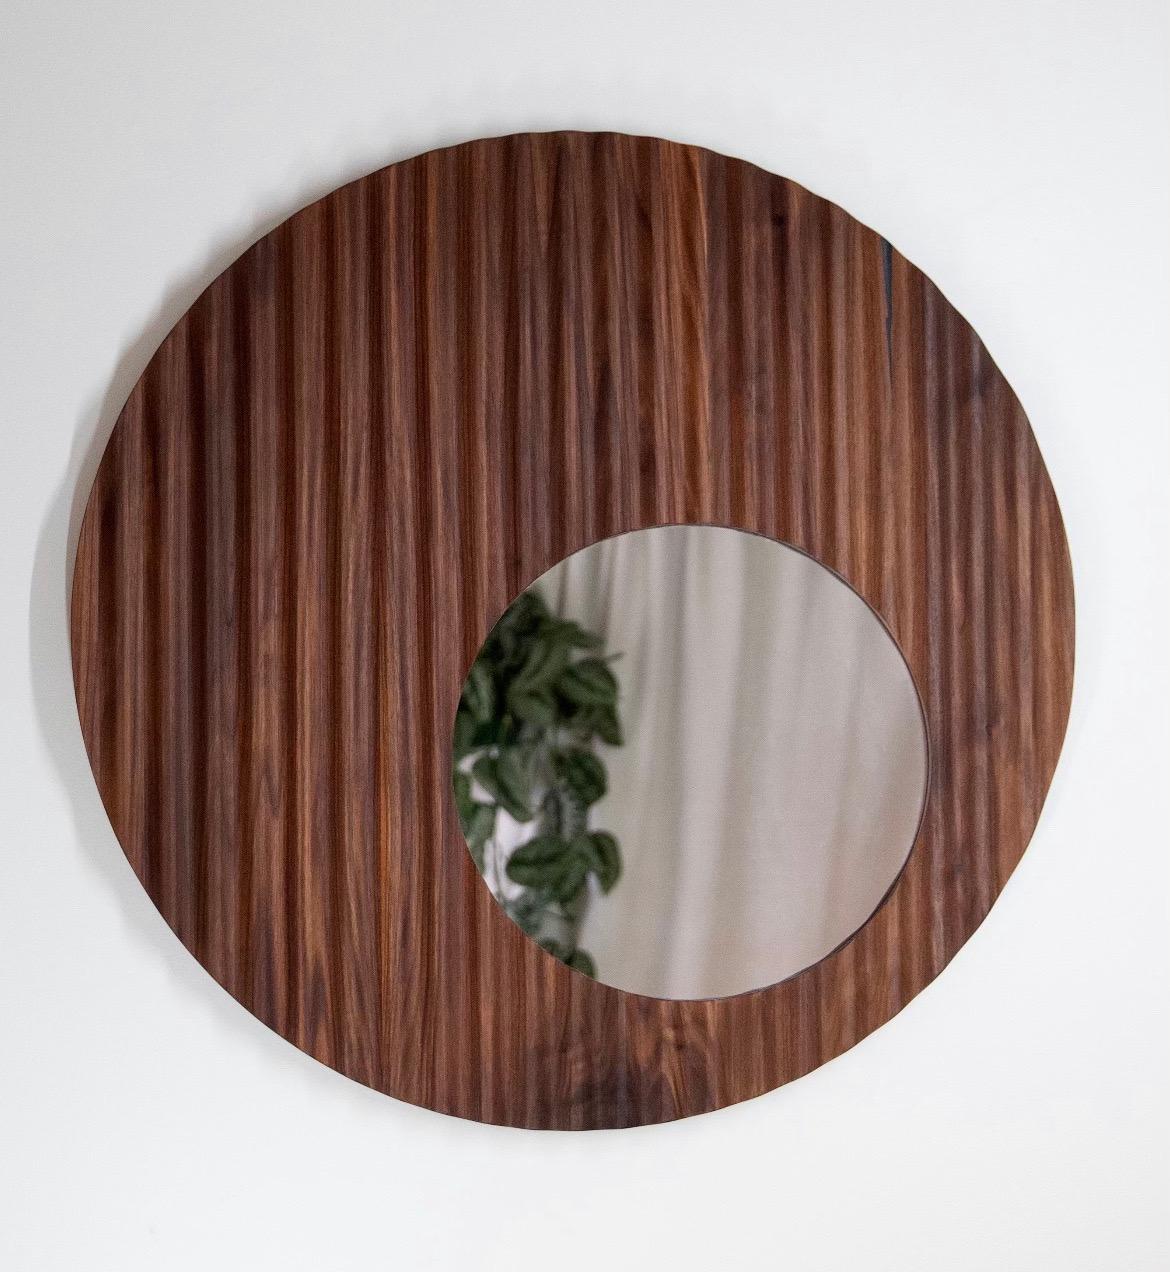 Le miroir à volants est conçu par la Caroline du Nord.  l'artisan Travis Hyatt. Ce miroir s'adapte parfaitement à tous les styles d'intérieur. Il capte magnifiquement la lumière et les ombres tout en mettant en valeur les veines naturelles du bois.